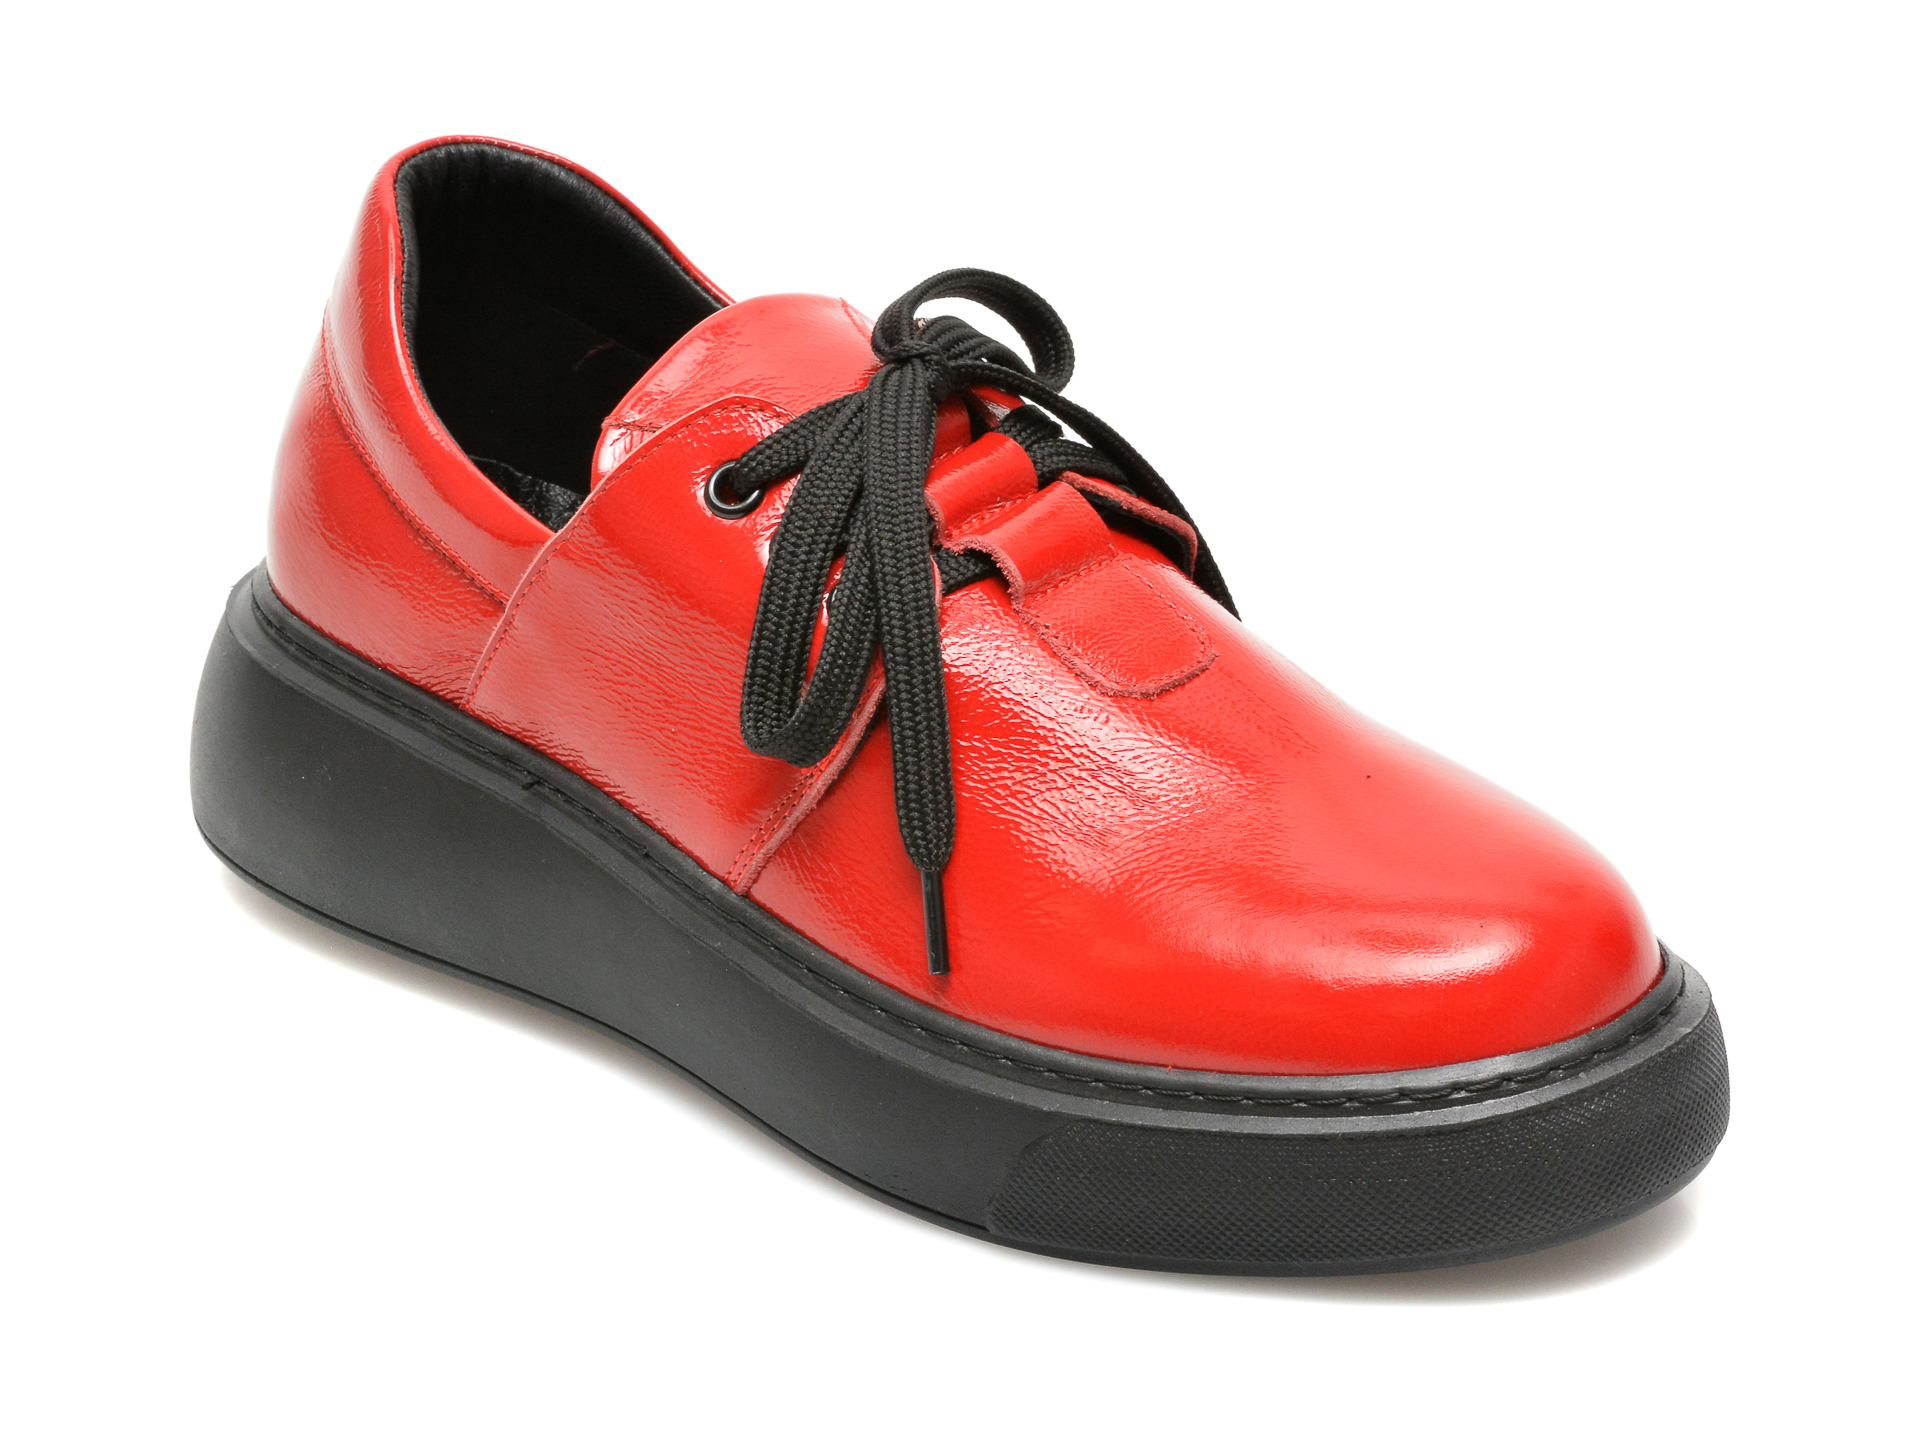 Pantofi FLAVIA PASSINI rosii, 15406, din piele naturala lacuita